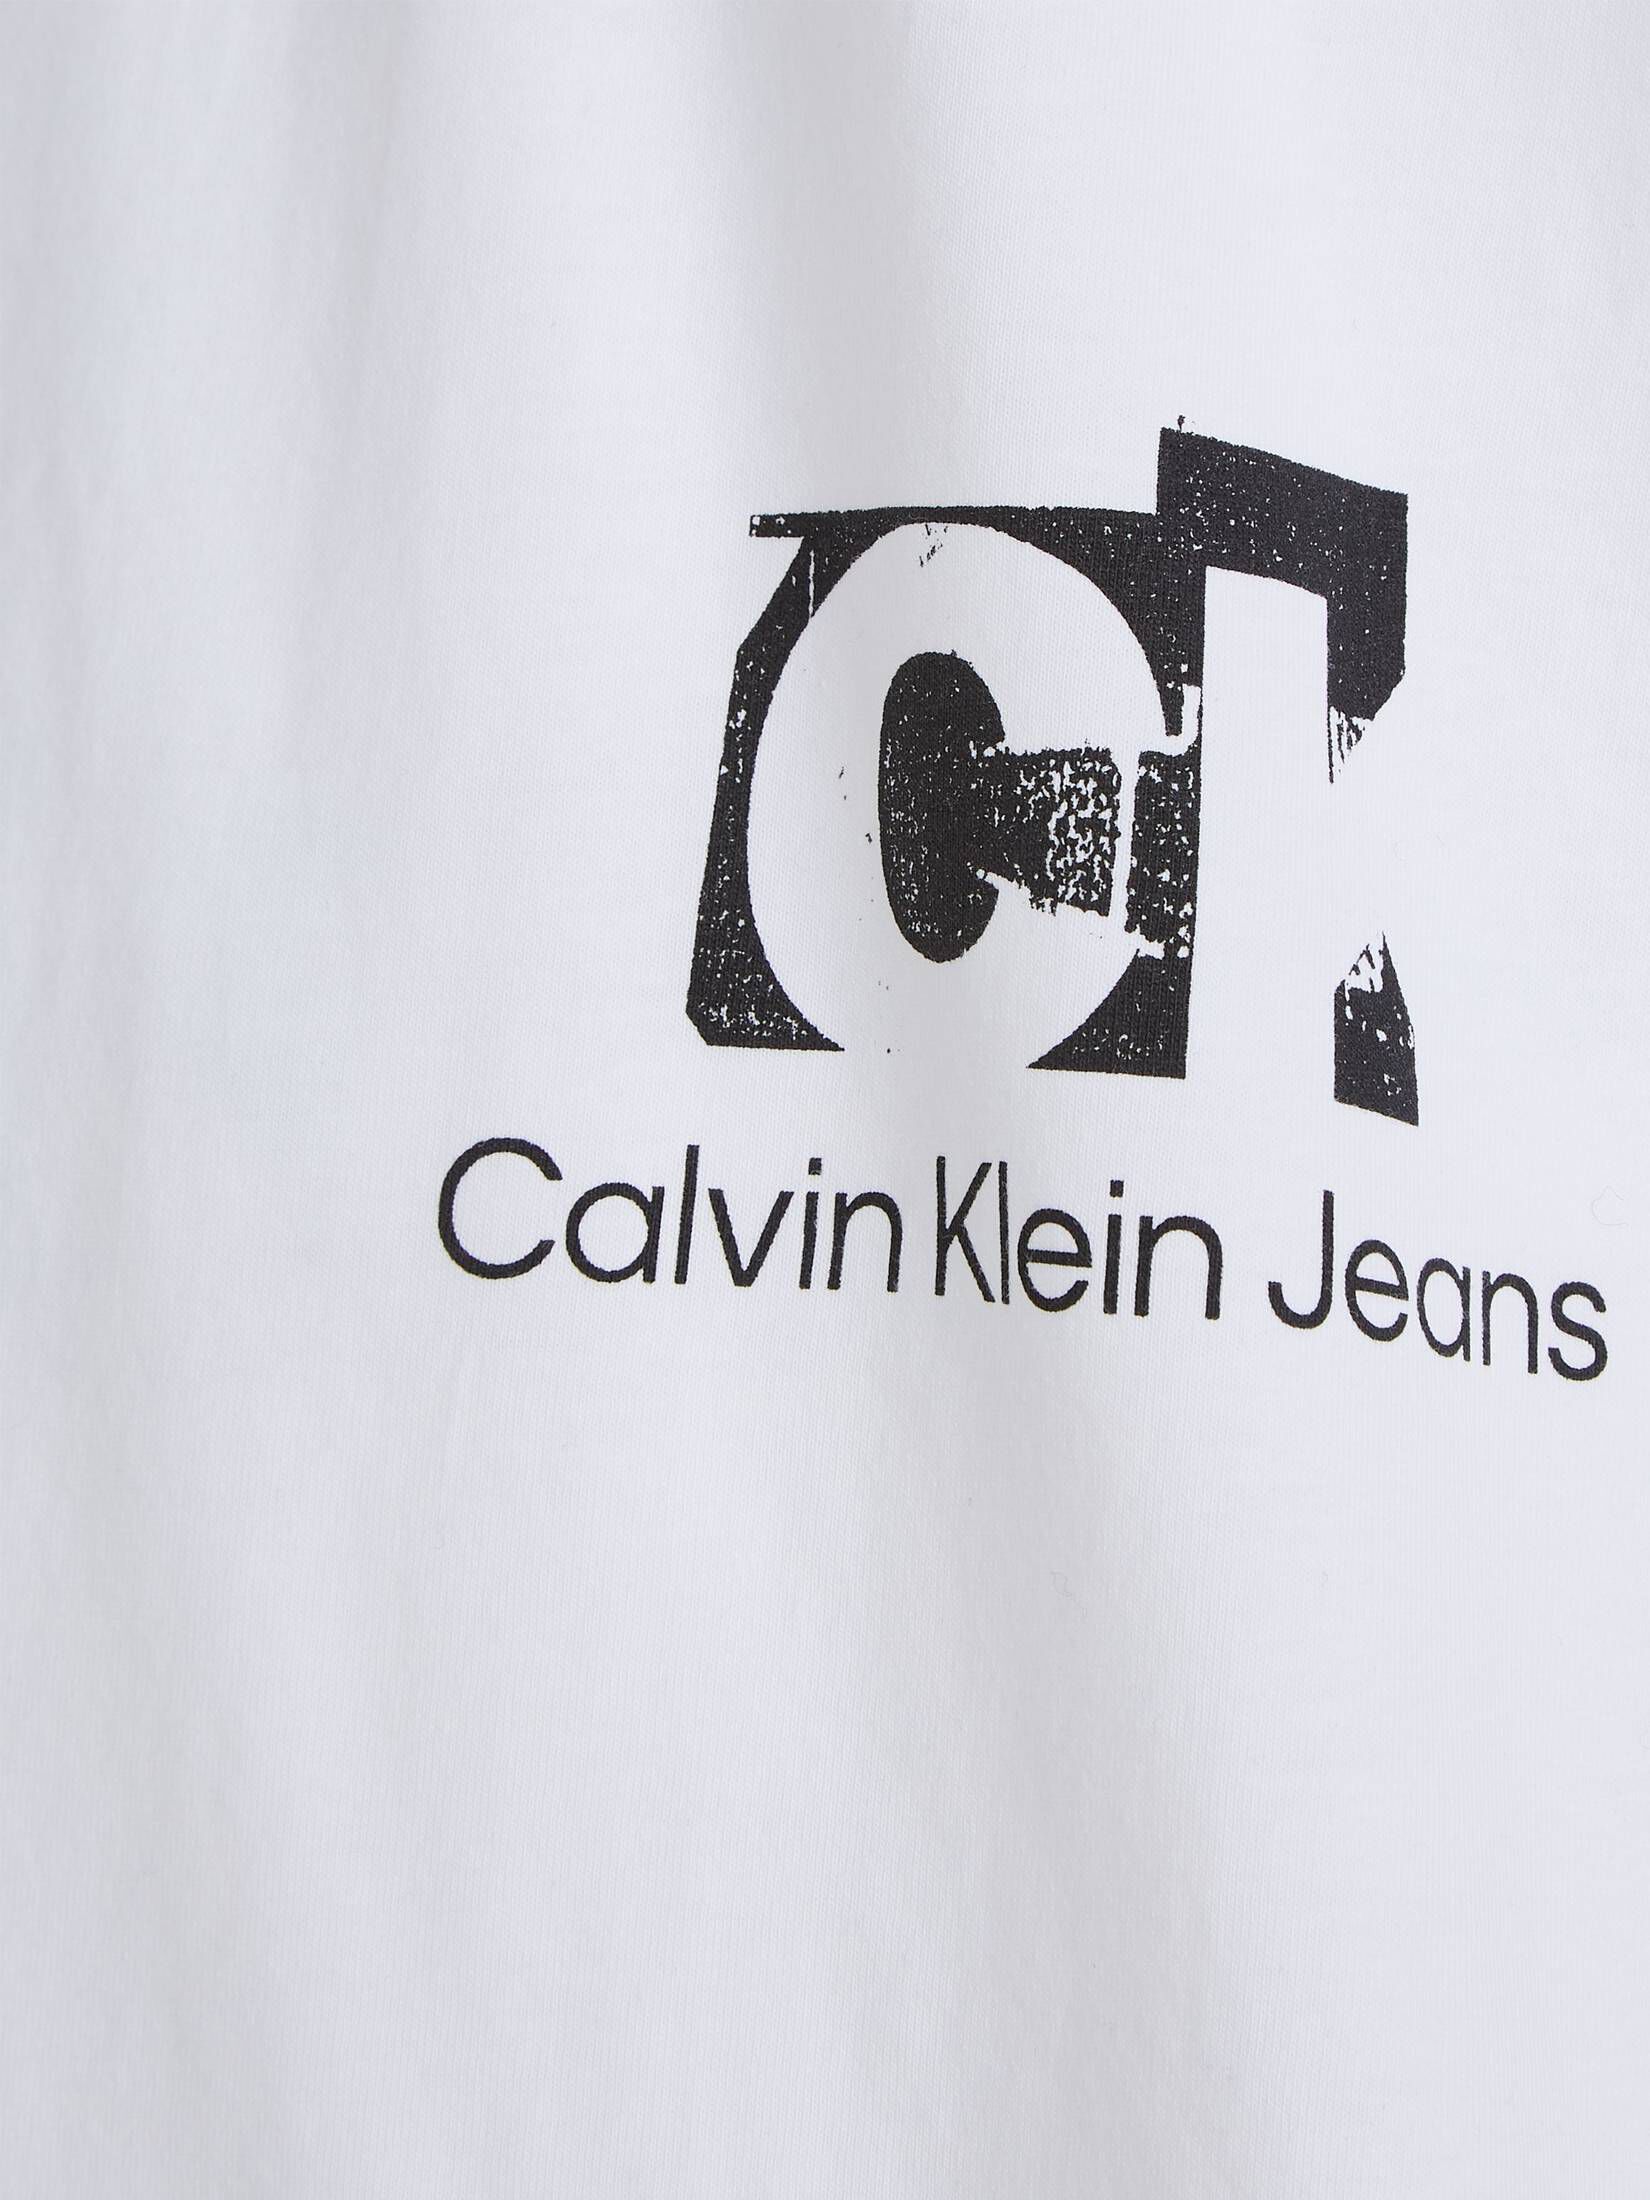 CALVIN KLEIN JEANS Herren mit TEE T-Shirt Fit engelhorn LANDSCAPE CONNECTED Bio-Baumwolle kaufen | Oversized LAYER